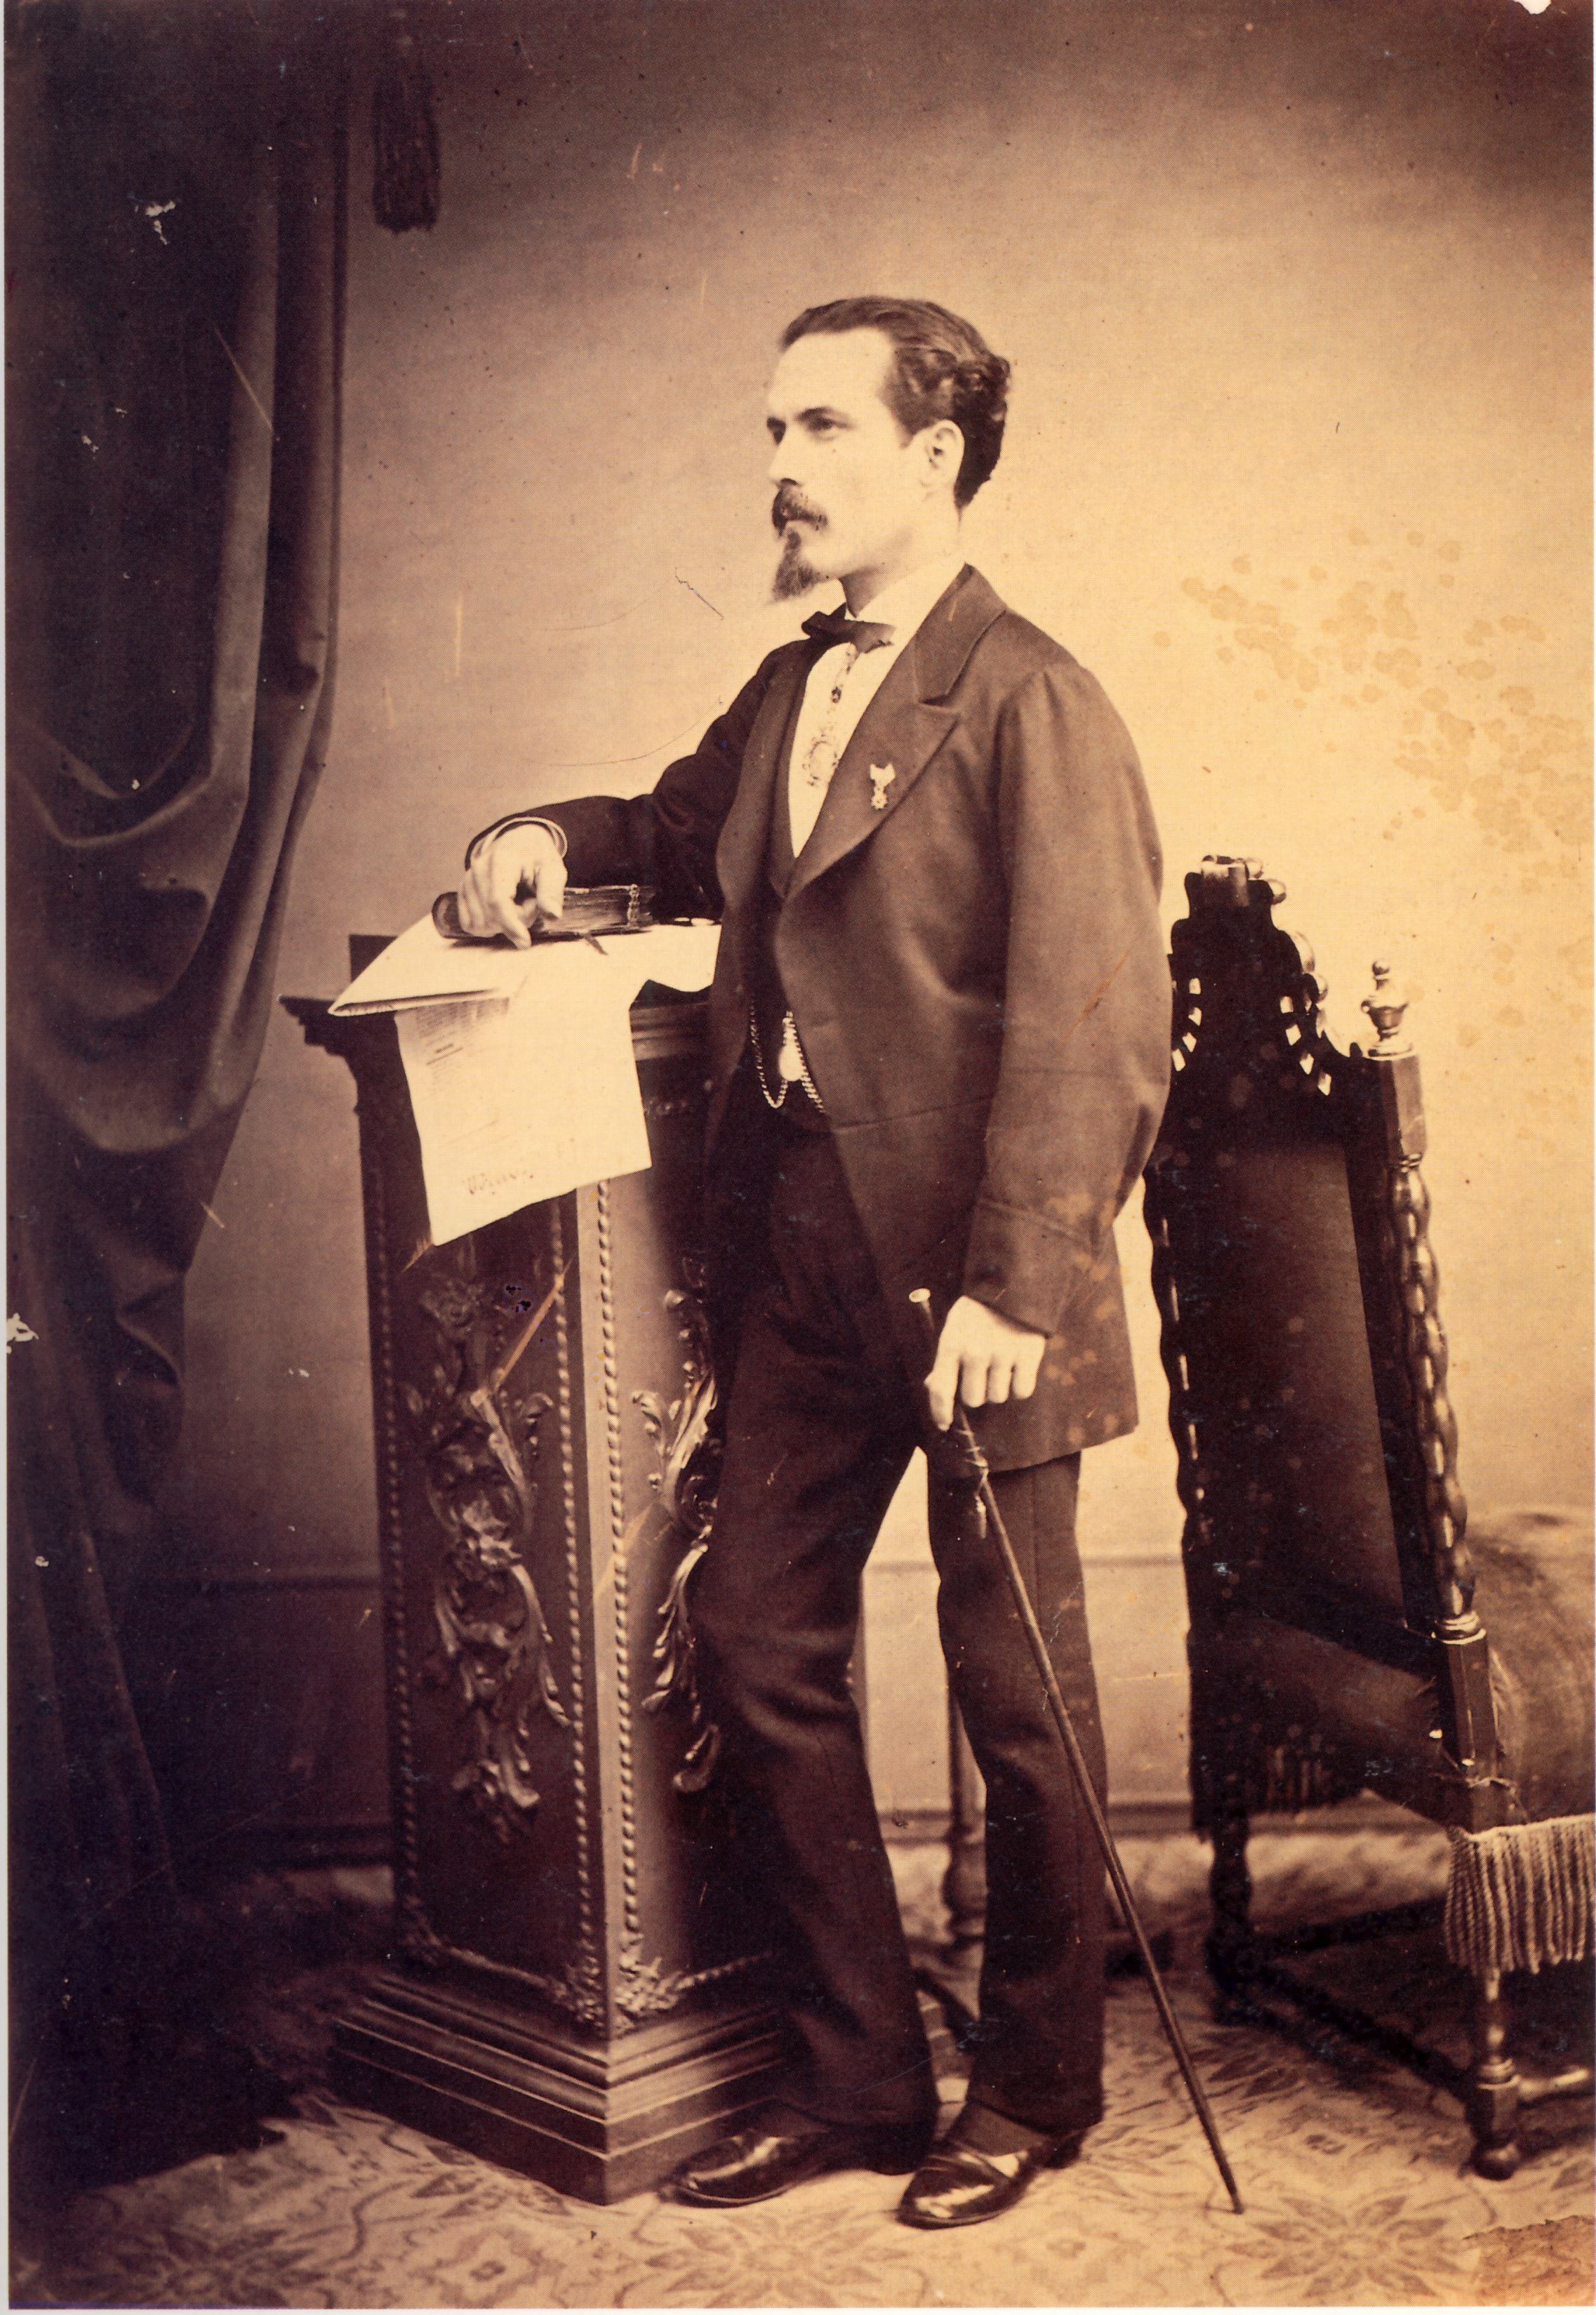 Rafael Romero Barros - 30 May 1832 - 2 December 1895